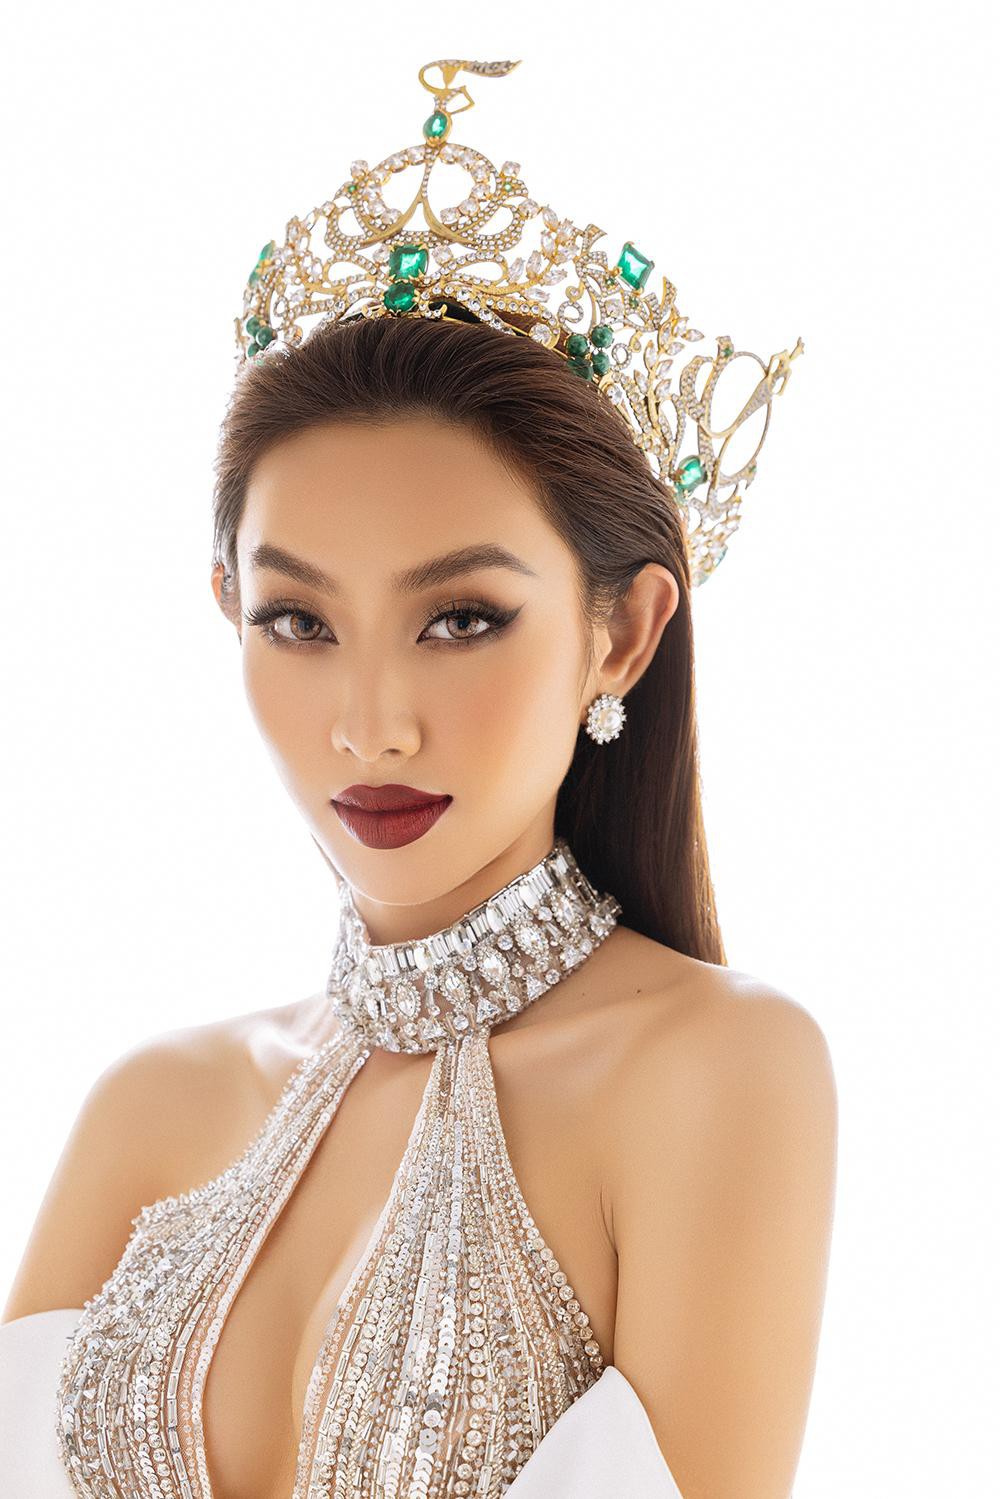 Thuỳ Tiên diện thiết kế khoét vòng 1 nóng bỏng trong bộ ảnh kỷ niệm 6 tháng đăng quang Miss Grand - Ảnh 7.